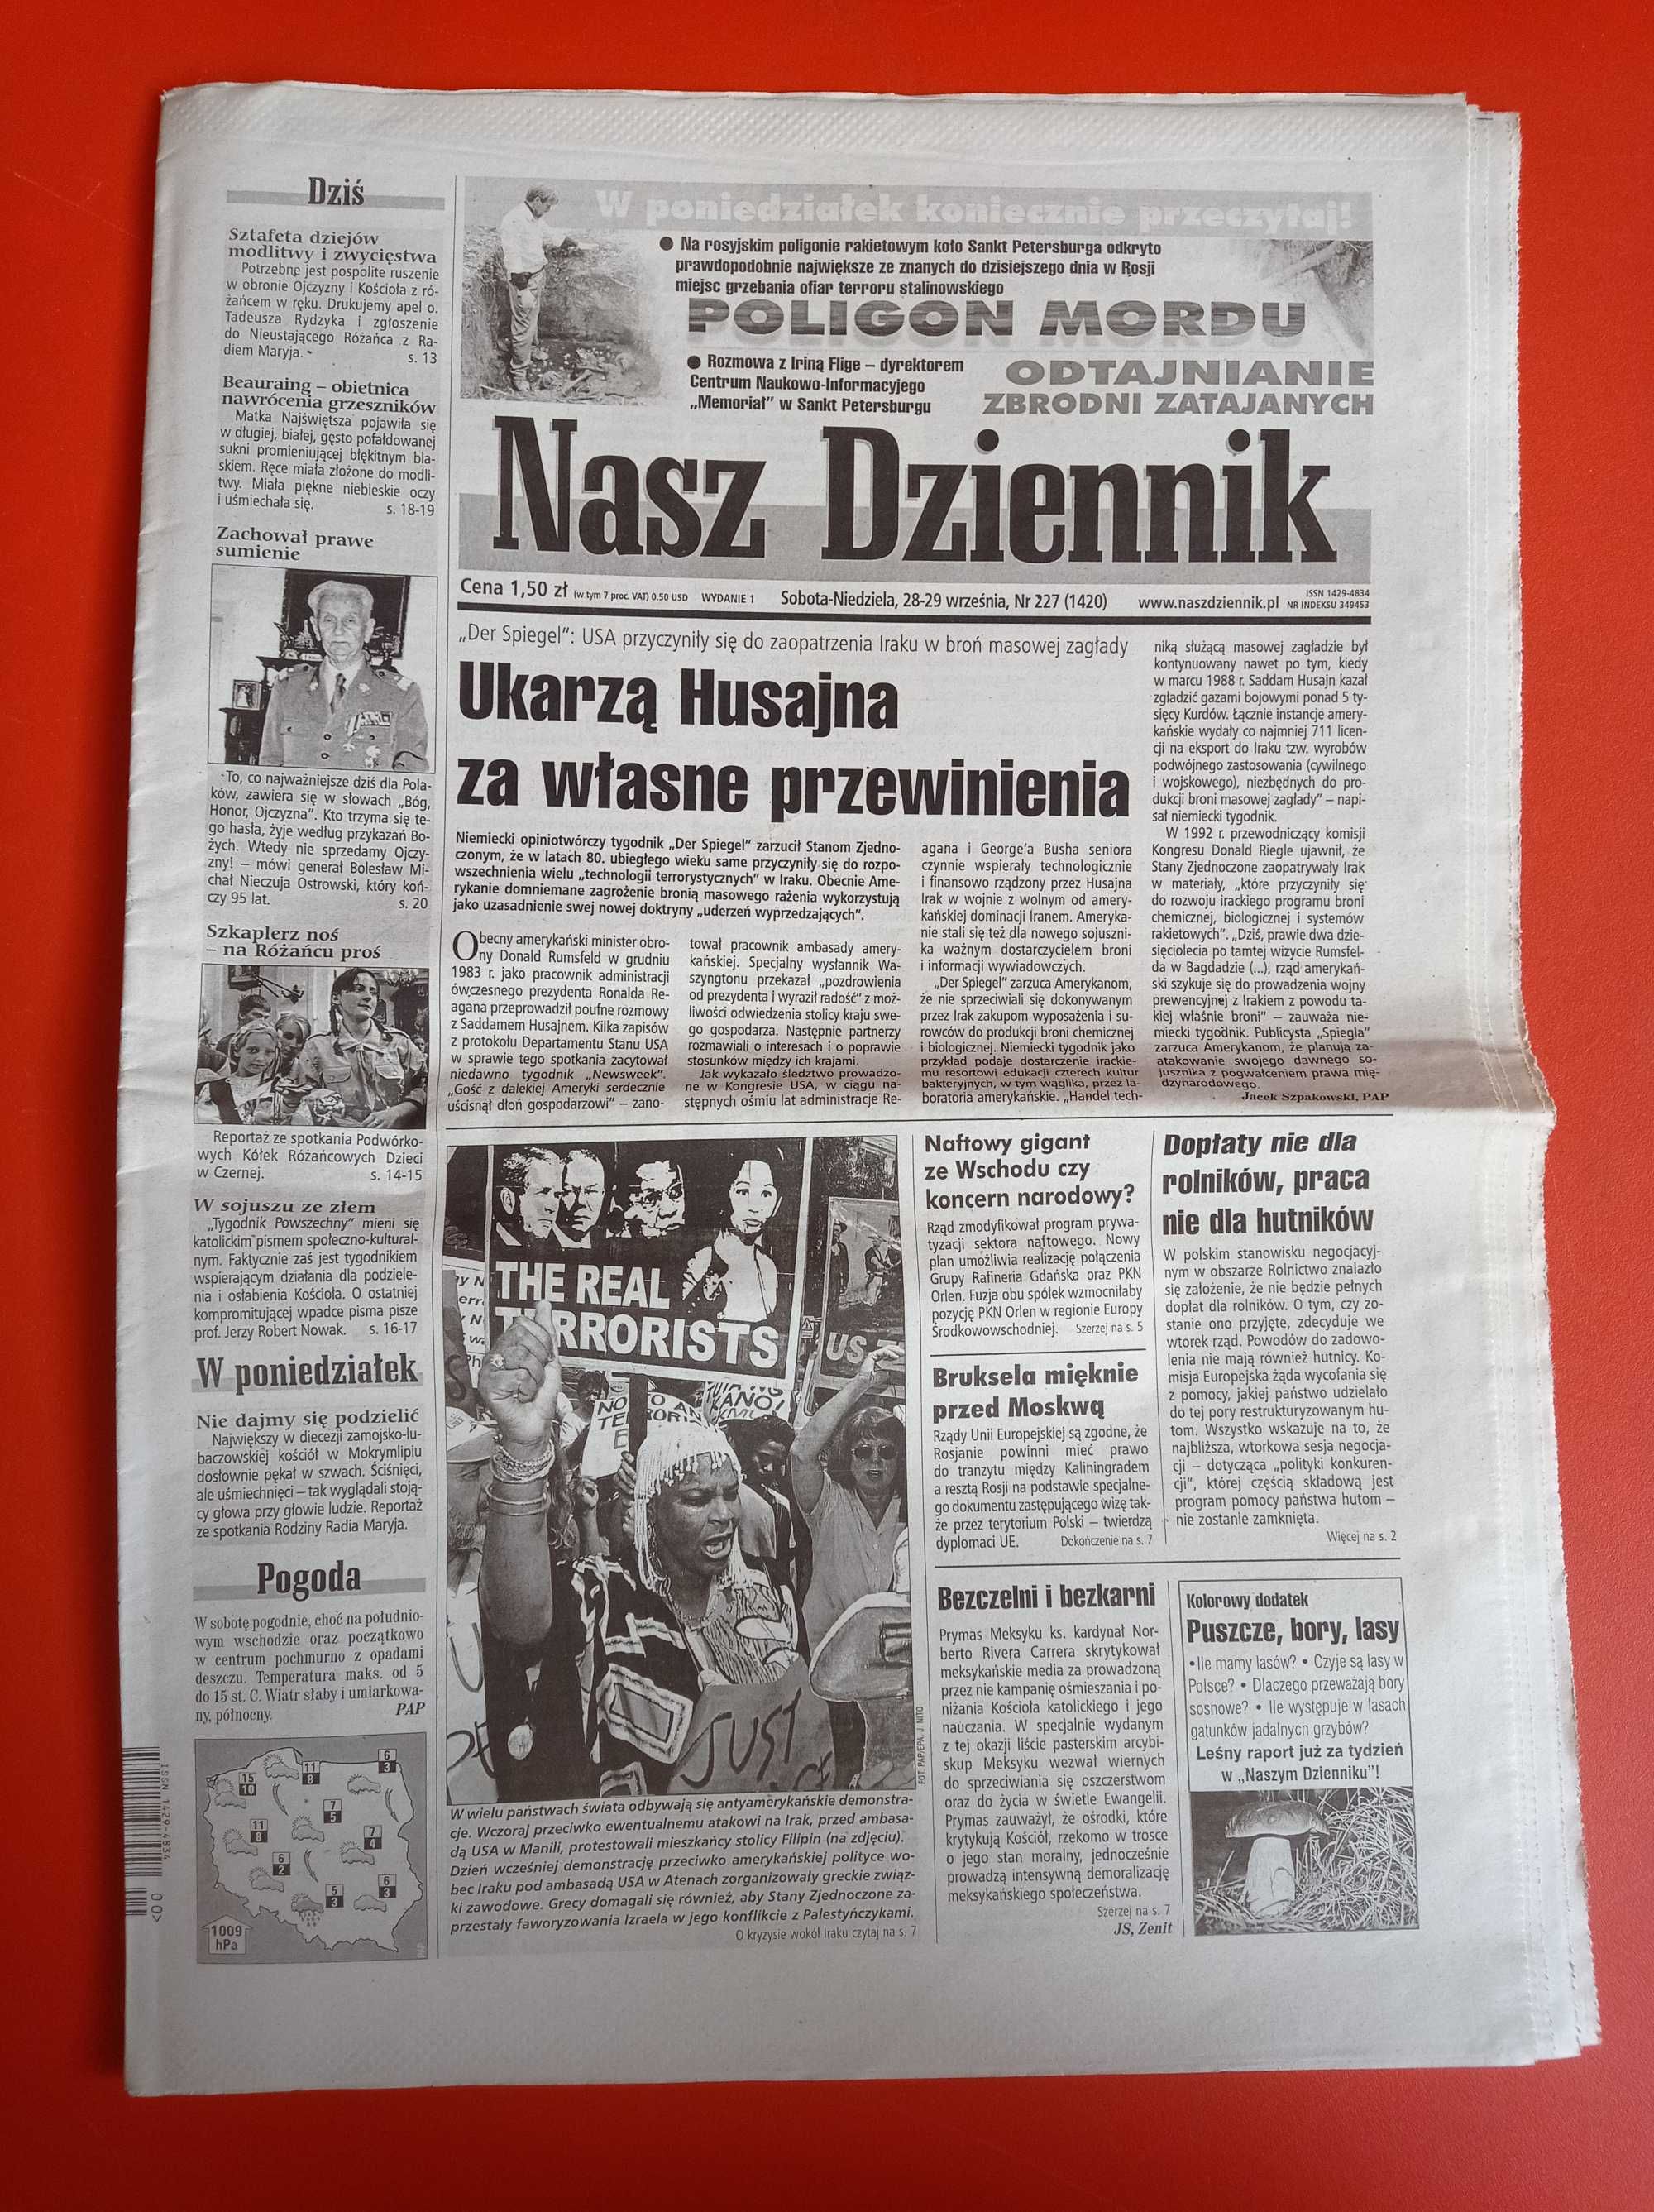 Nasz Dziennik, nr 227/2002, 28-29 września 2002